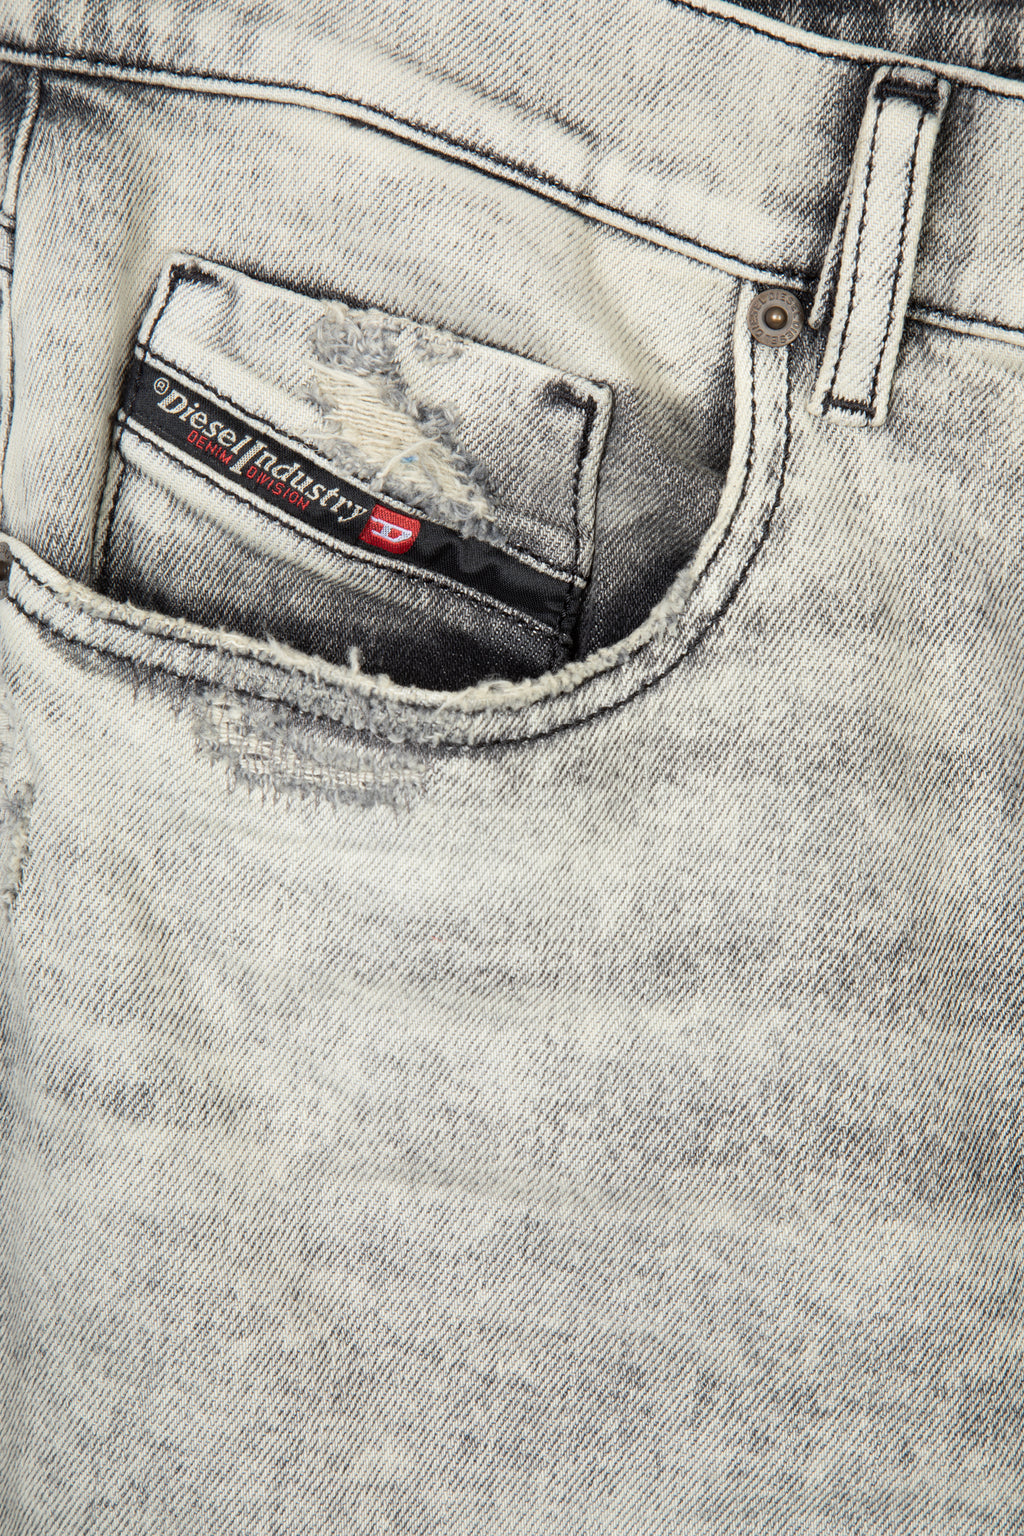 alt-image__Washed-grey-slim-fit-jeans---2019-D-Strukt-